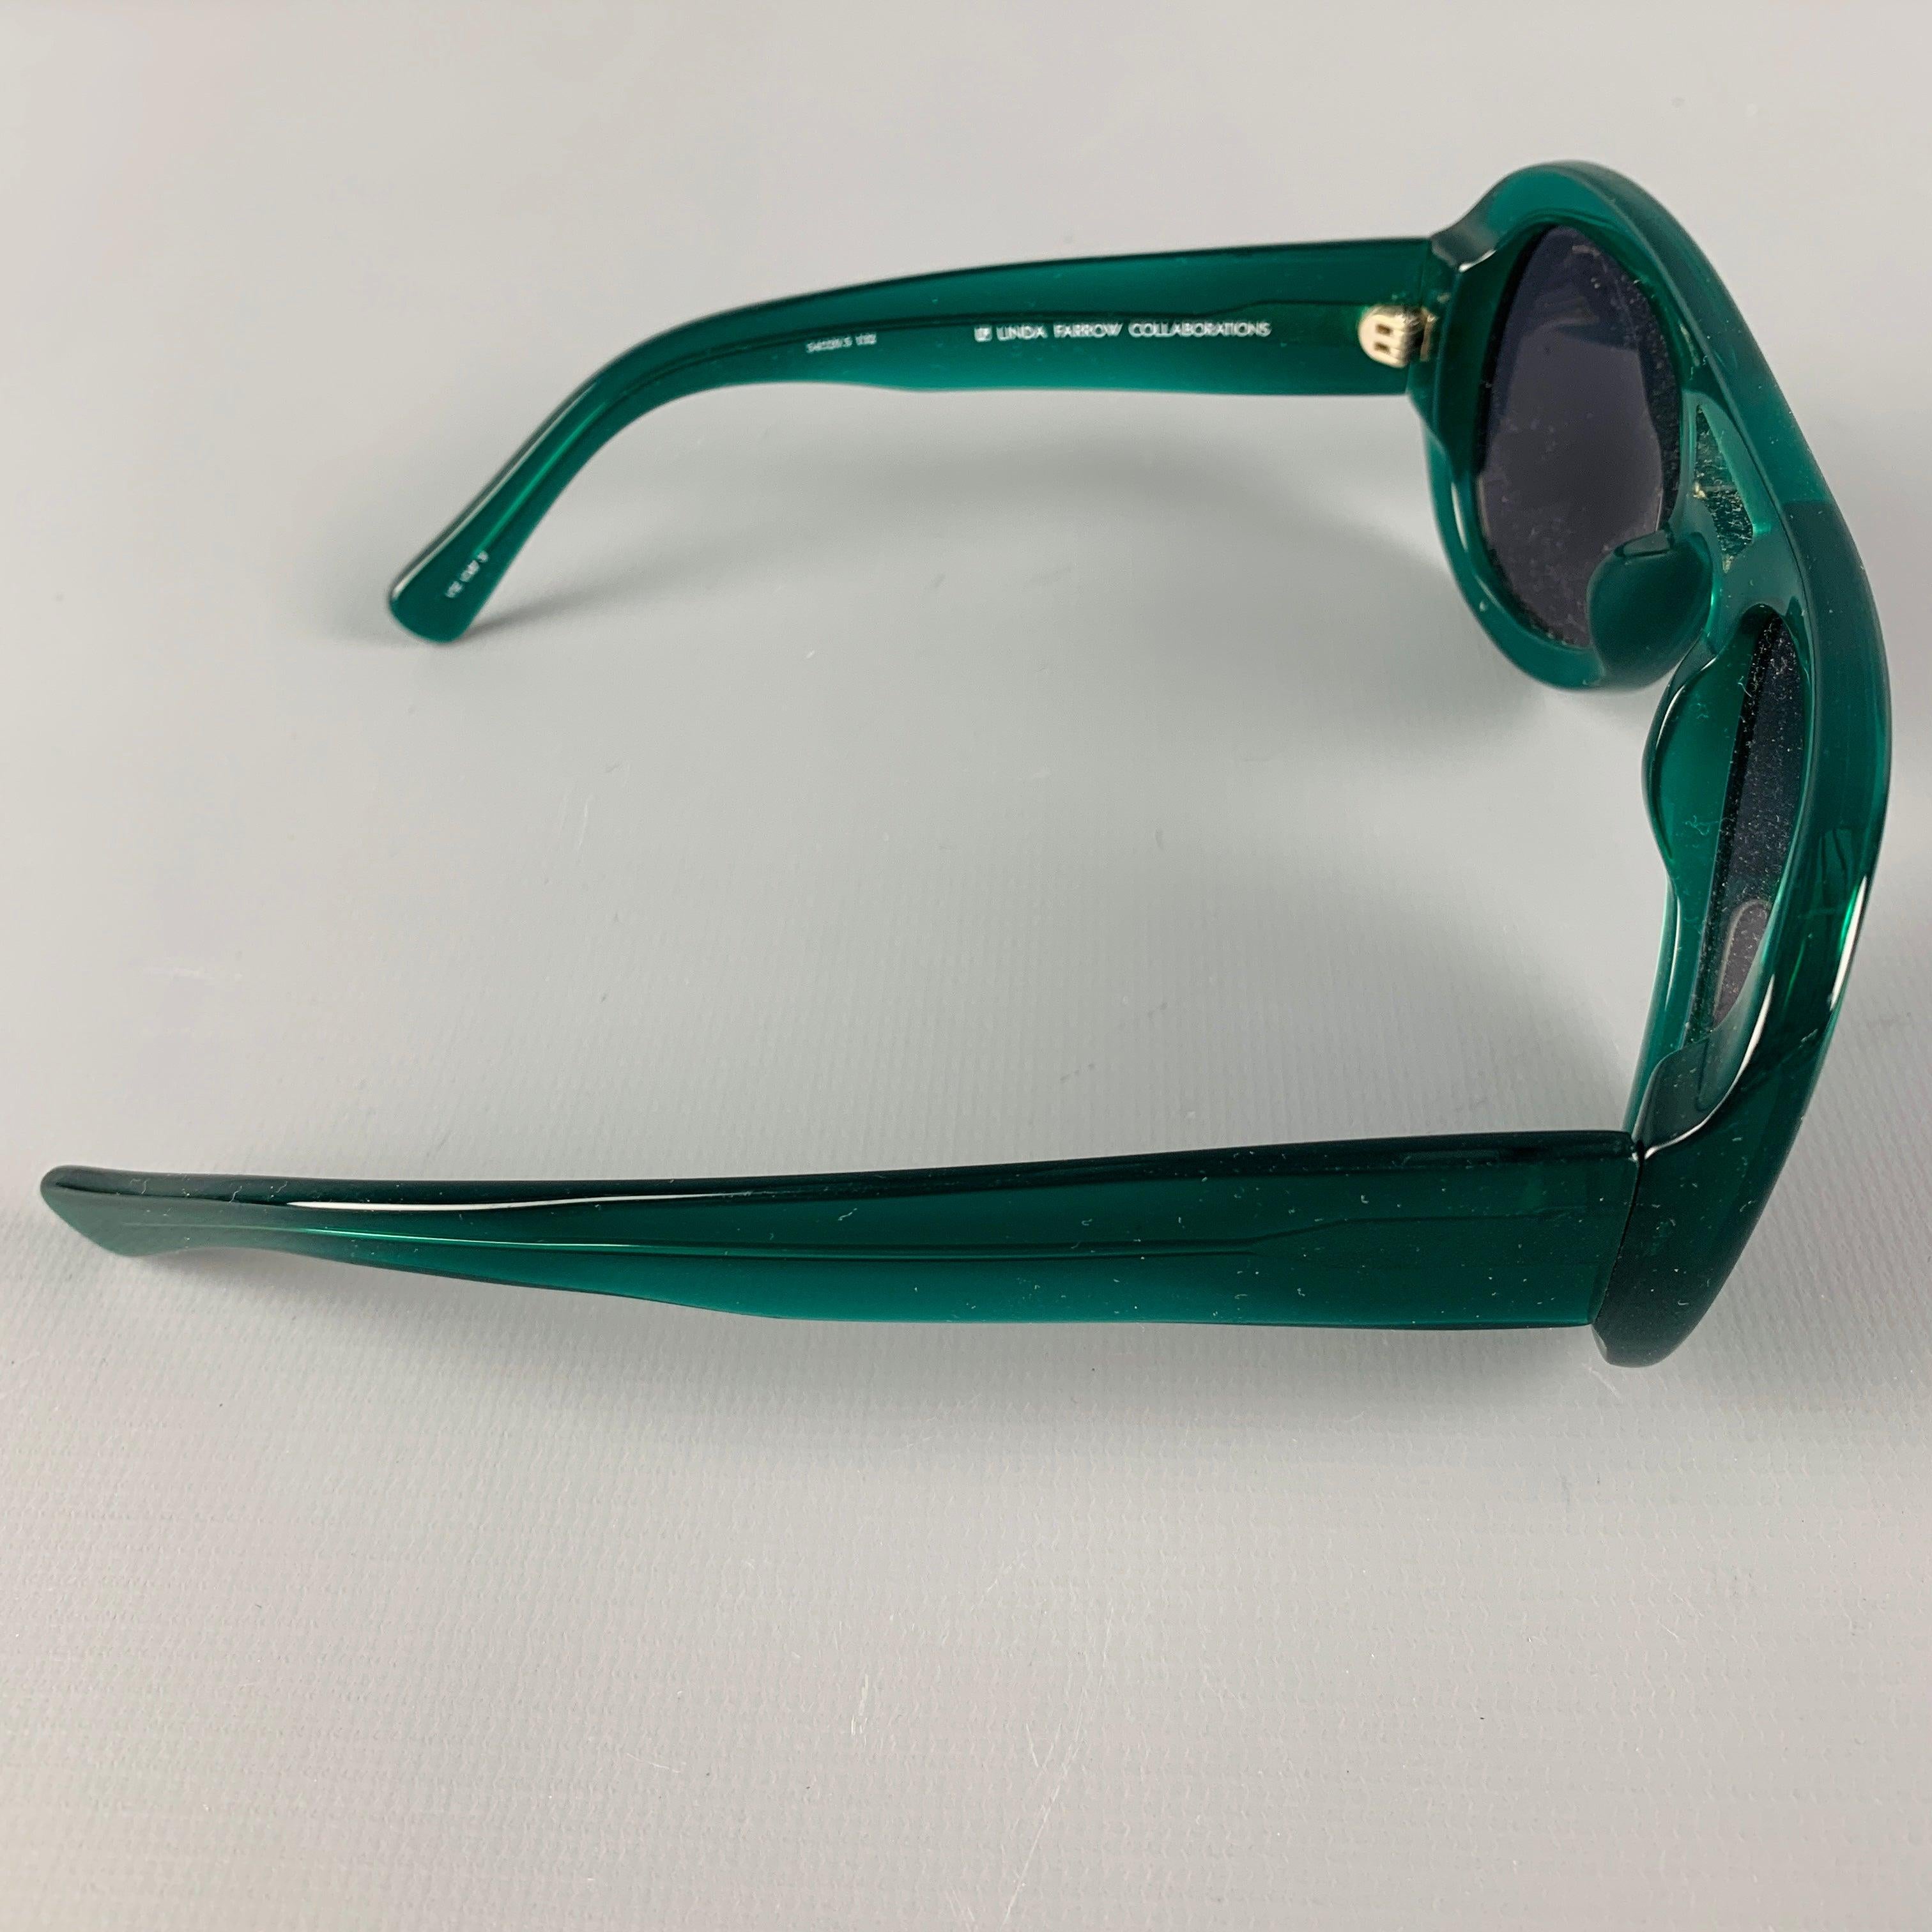 DRIES VAN NOTEN x LINDA FARROW Sonnenbrille aus grünem Acetat mit silberfarbener Hardware und grau getönten Gläsern. Made in Japan. sehr guter gebrauchter Zustand. So wie es ist. 

Markiert:   DVN/25/4  

Abmessungen: 
  Länge: 12 cm, Höhe: 4,5 cm.
